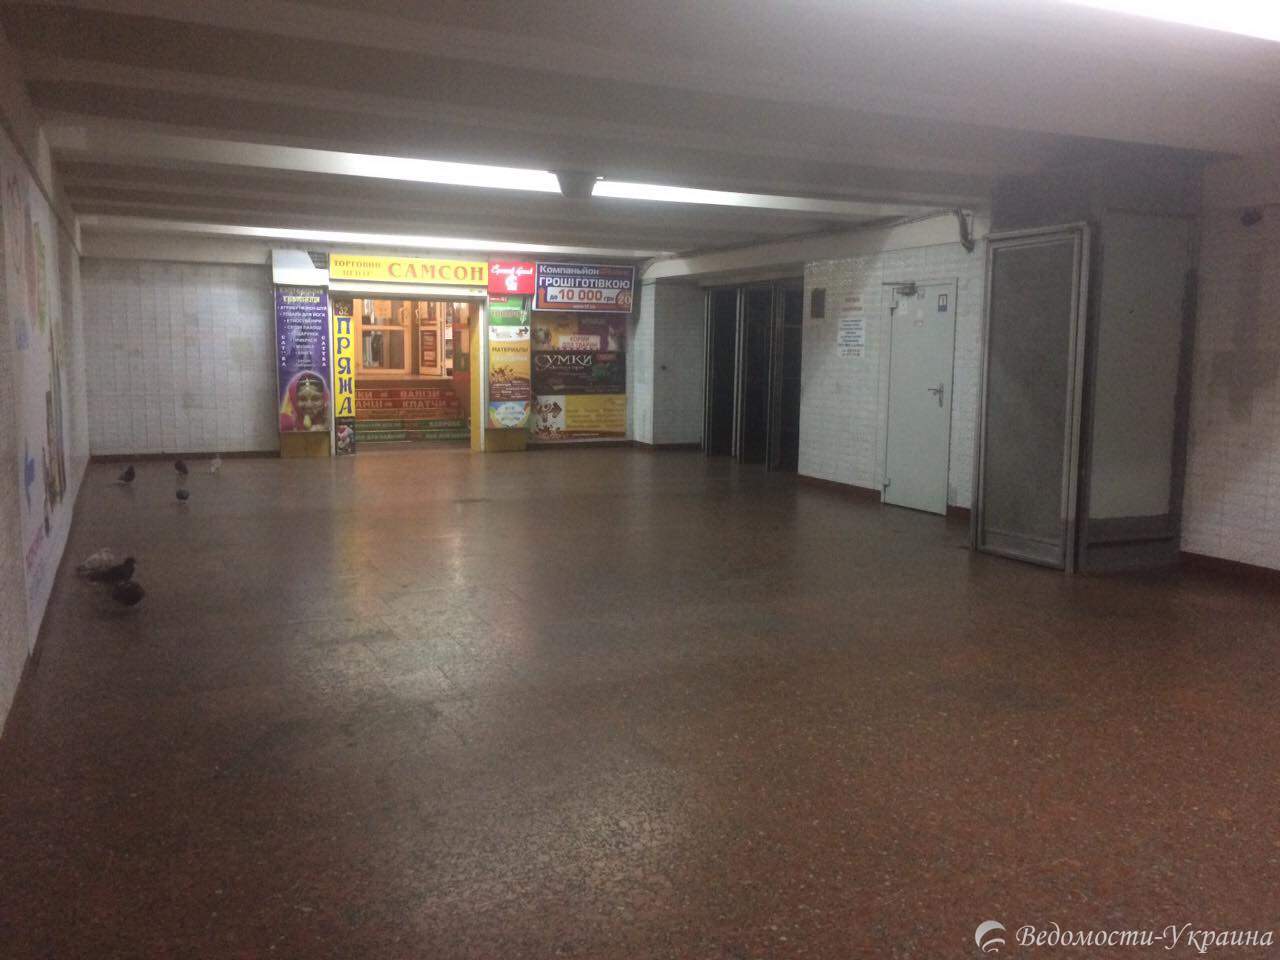 Птичий помёт и отбитая плитка: как выглядит вход в одну из столичных станций метро (фото)